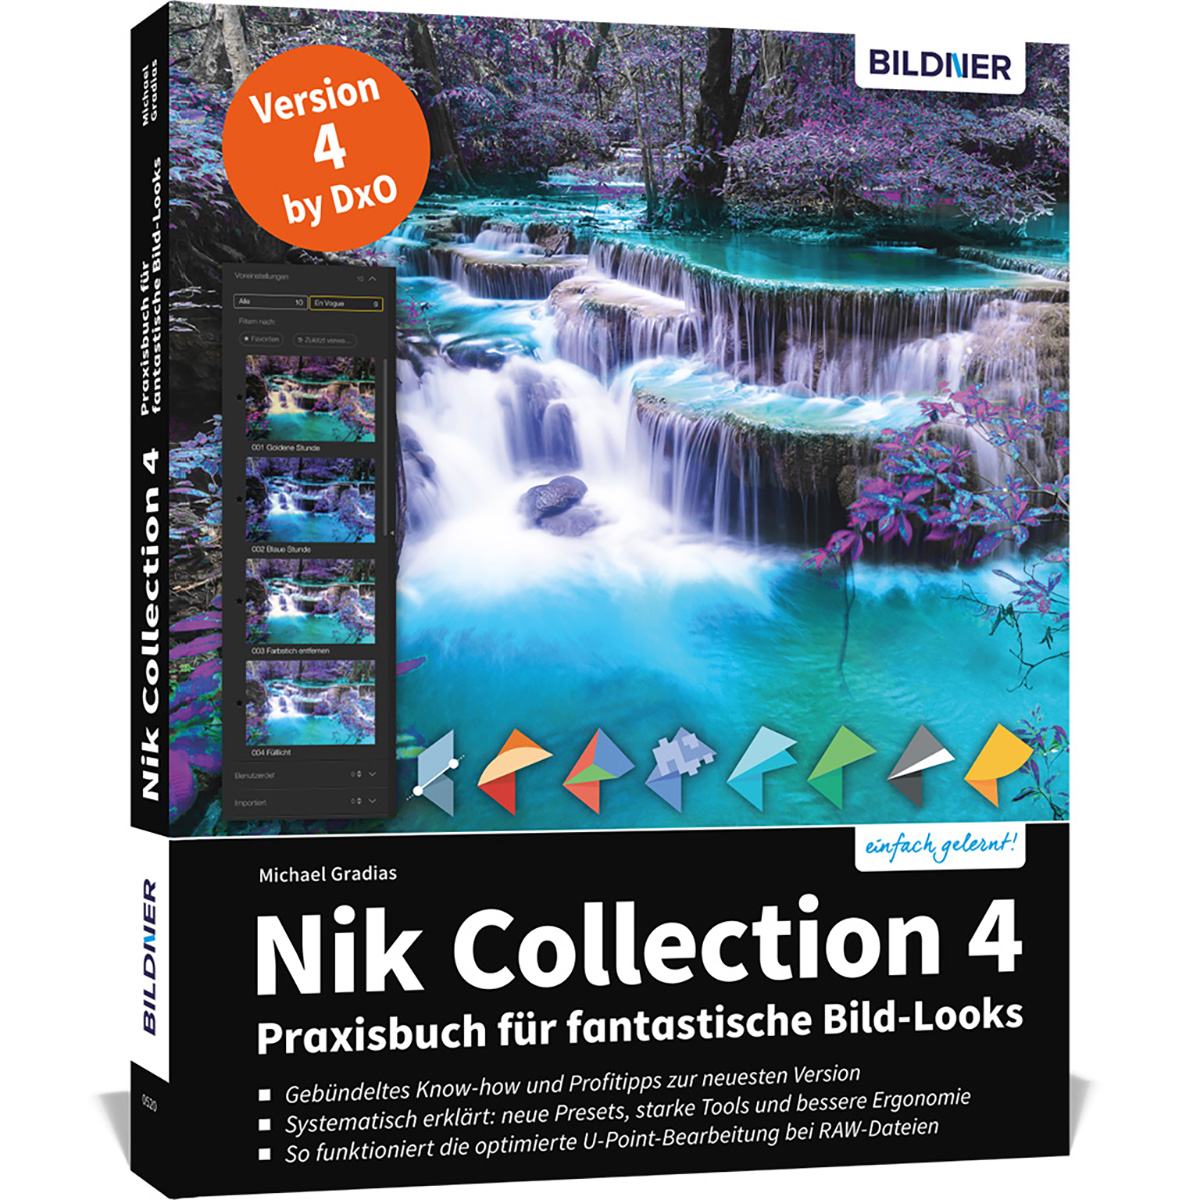 Nik für Collection - Praxisbuch 4 fantastische Bild-Looks